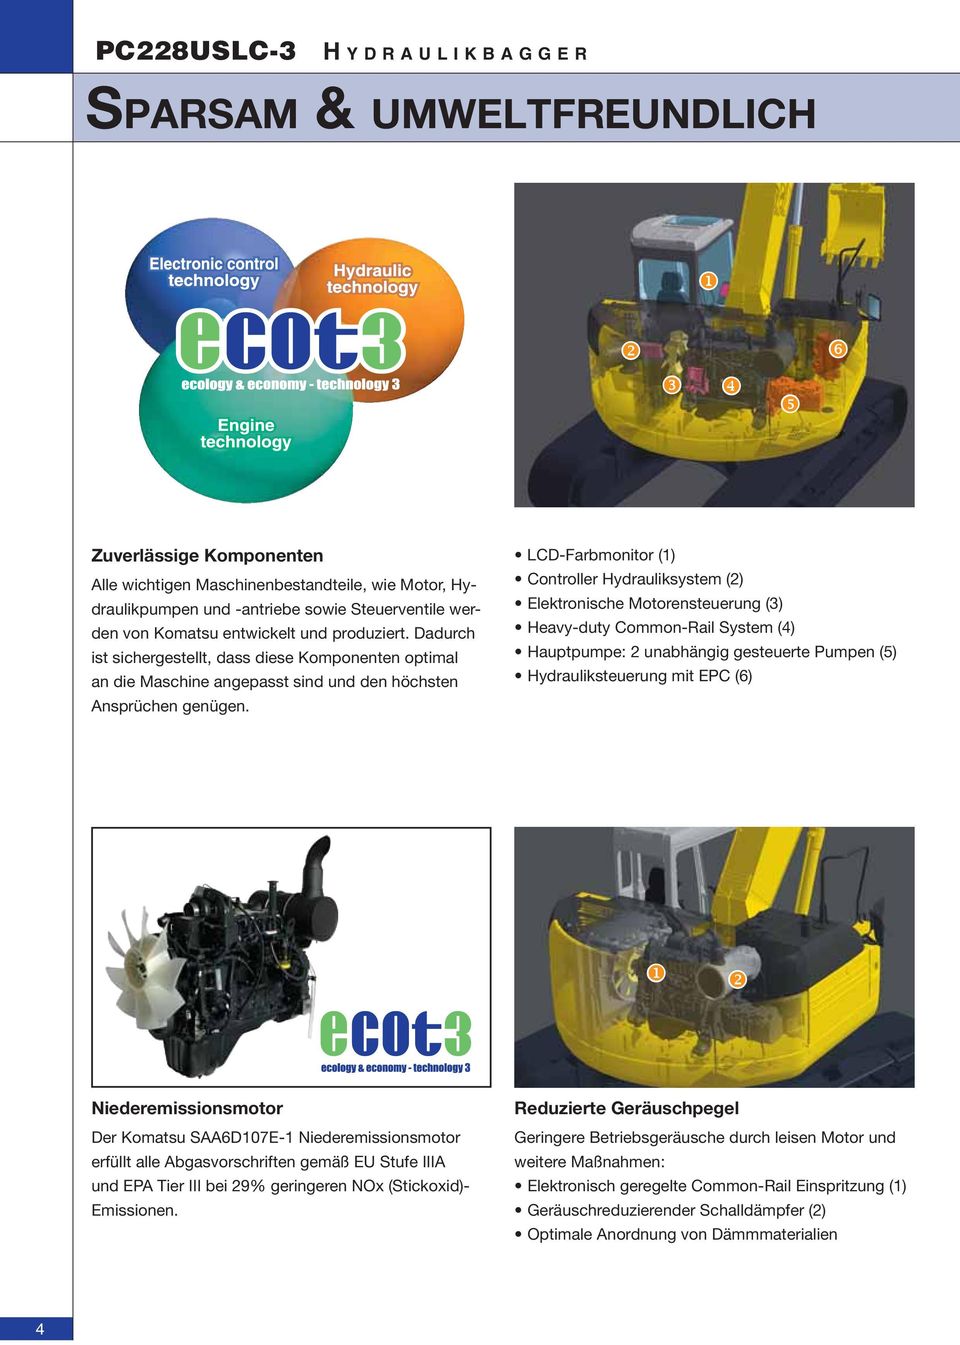 LCD-Farbmonitor (1) Controller Hydrauliksystem (2) Elektronische Motorensteuerung (3) Heavy-duty Common-Rail System (4) Hauptpumpe: 2 unabhängig gesteuerte Pumpen (5) Hydrauliksteuerung mit EPC (6)